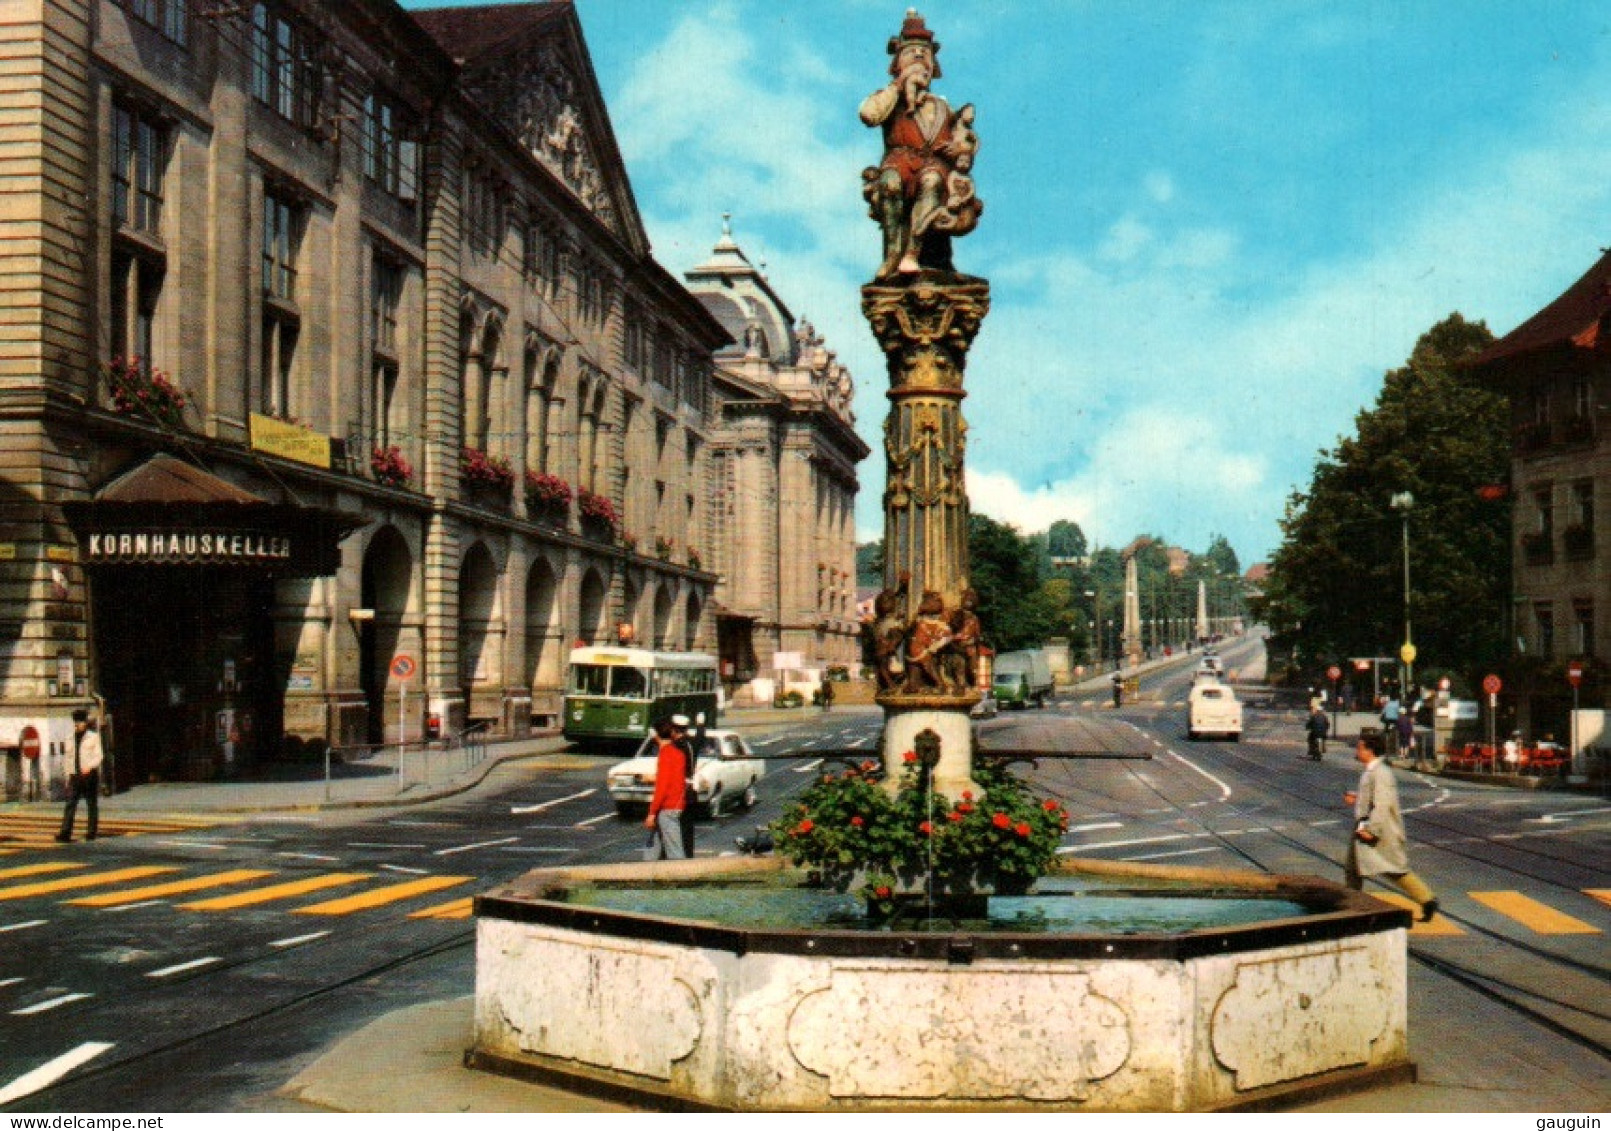 CPSM - BERN - Fontaine De L'Ogre Et Place Kornhaus - Edition Bovey Cie - Berne